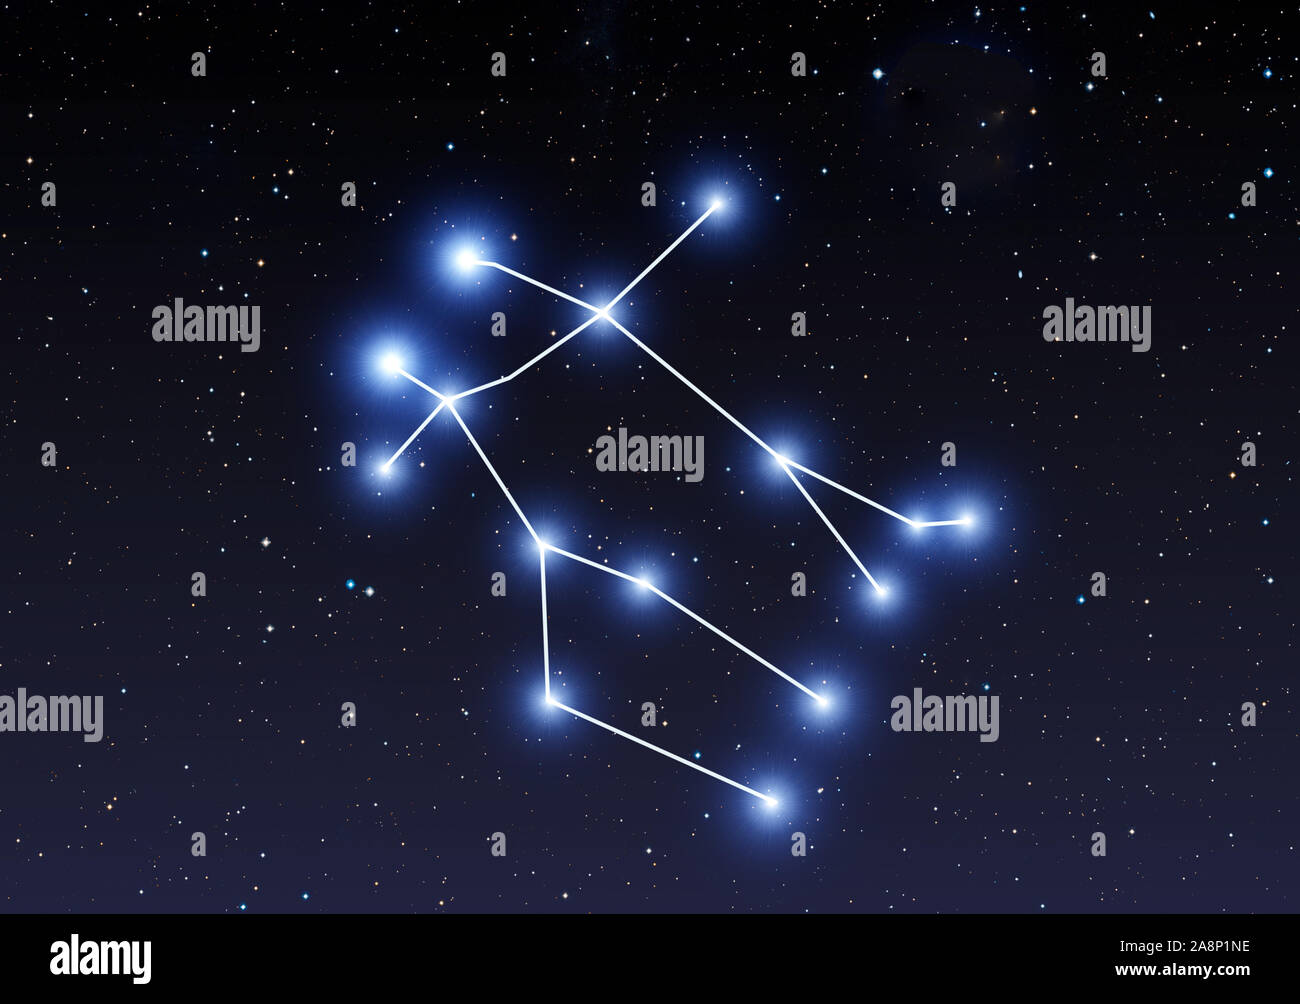 Gemini Star Formation